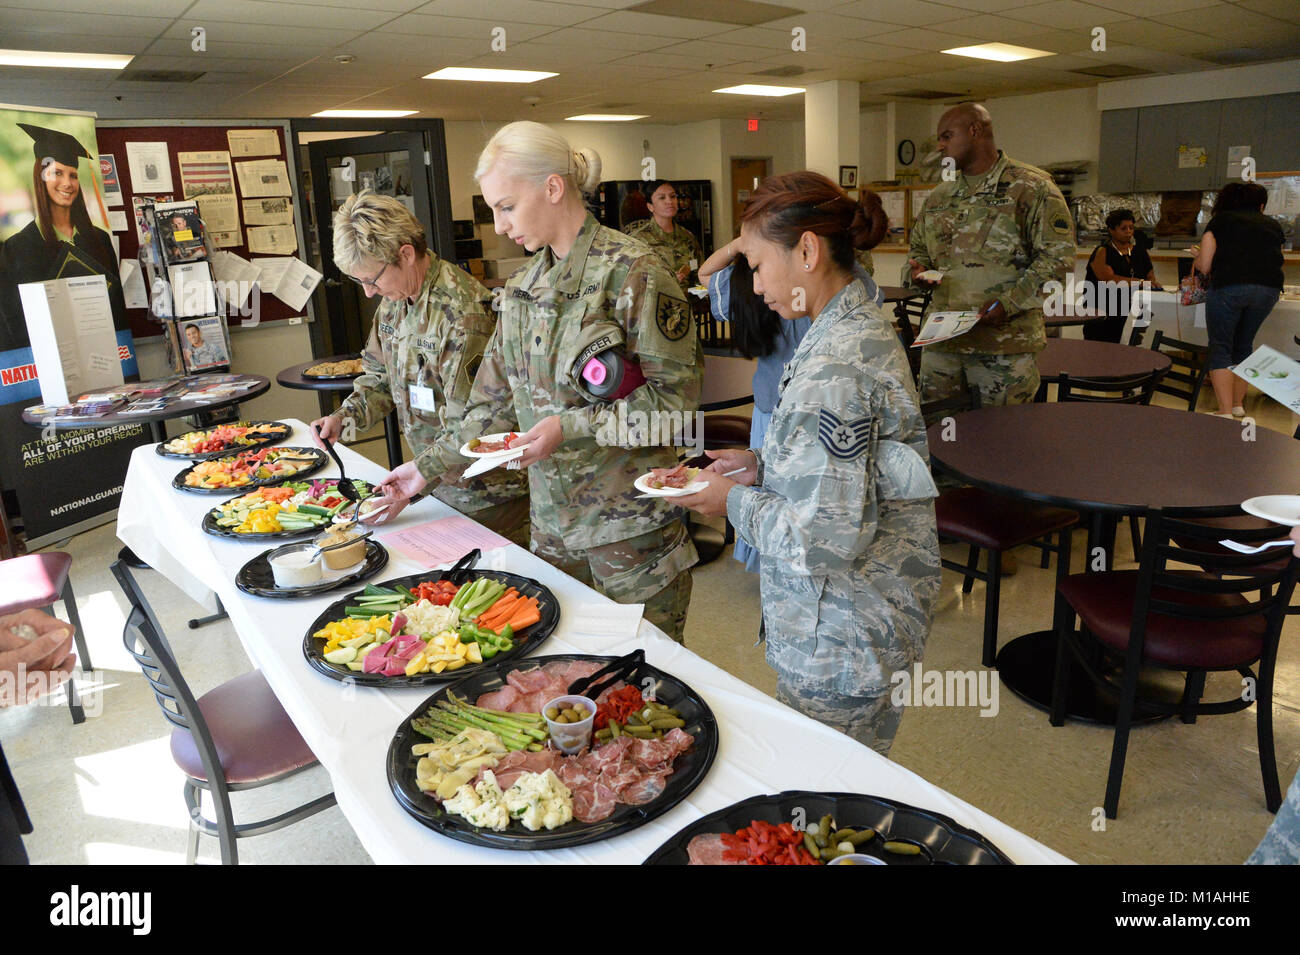 La Guardia Nacional de California celebra el Día de la igualdad de la Mujer el 28 de agosto, 2017, en la sede del Departamento Militar en Sacramento. El Sargento. Cyndi Baltezore sirvió como orador y premiado en el evento. Baltezore, la primera mujer miembro de infantería de la Guardia de cal y un veterano de Irak y Afganistán, sirve como un líder de escuadrón de infantería con el 1-185º Batallón de Infantería (U.S. Fotos de la fuerza aérea por el Sargento Primero. David Loeffler/liberado). Foto de stock